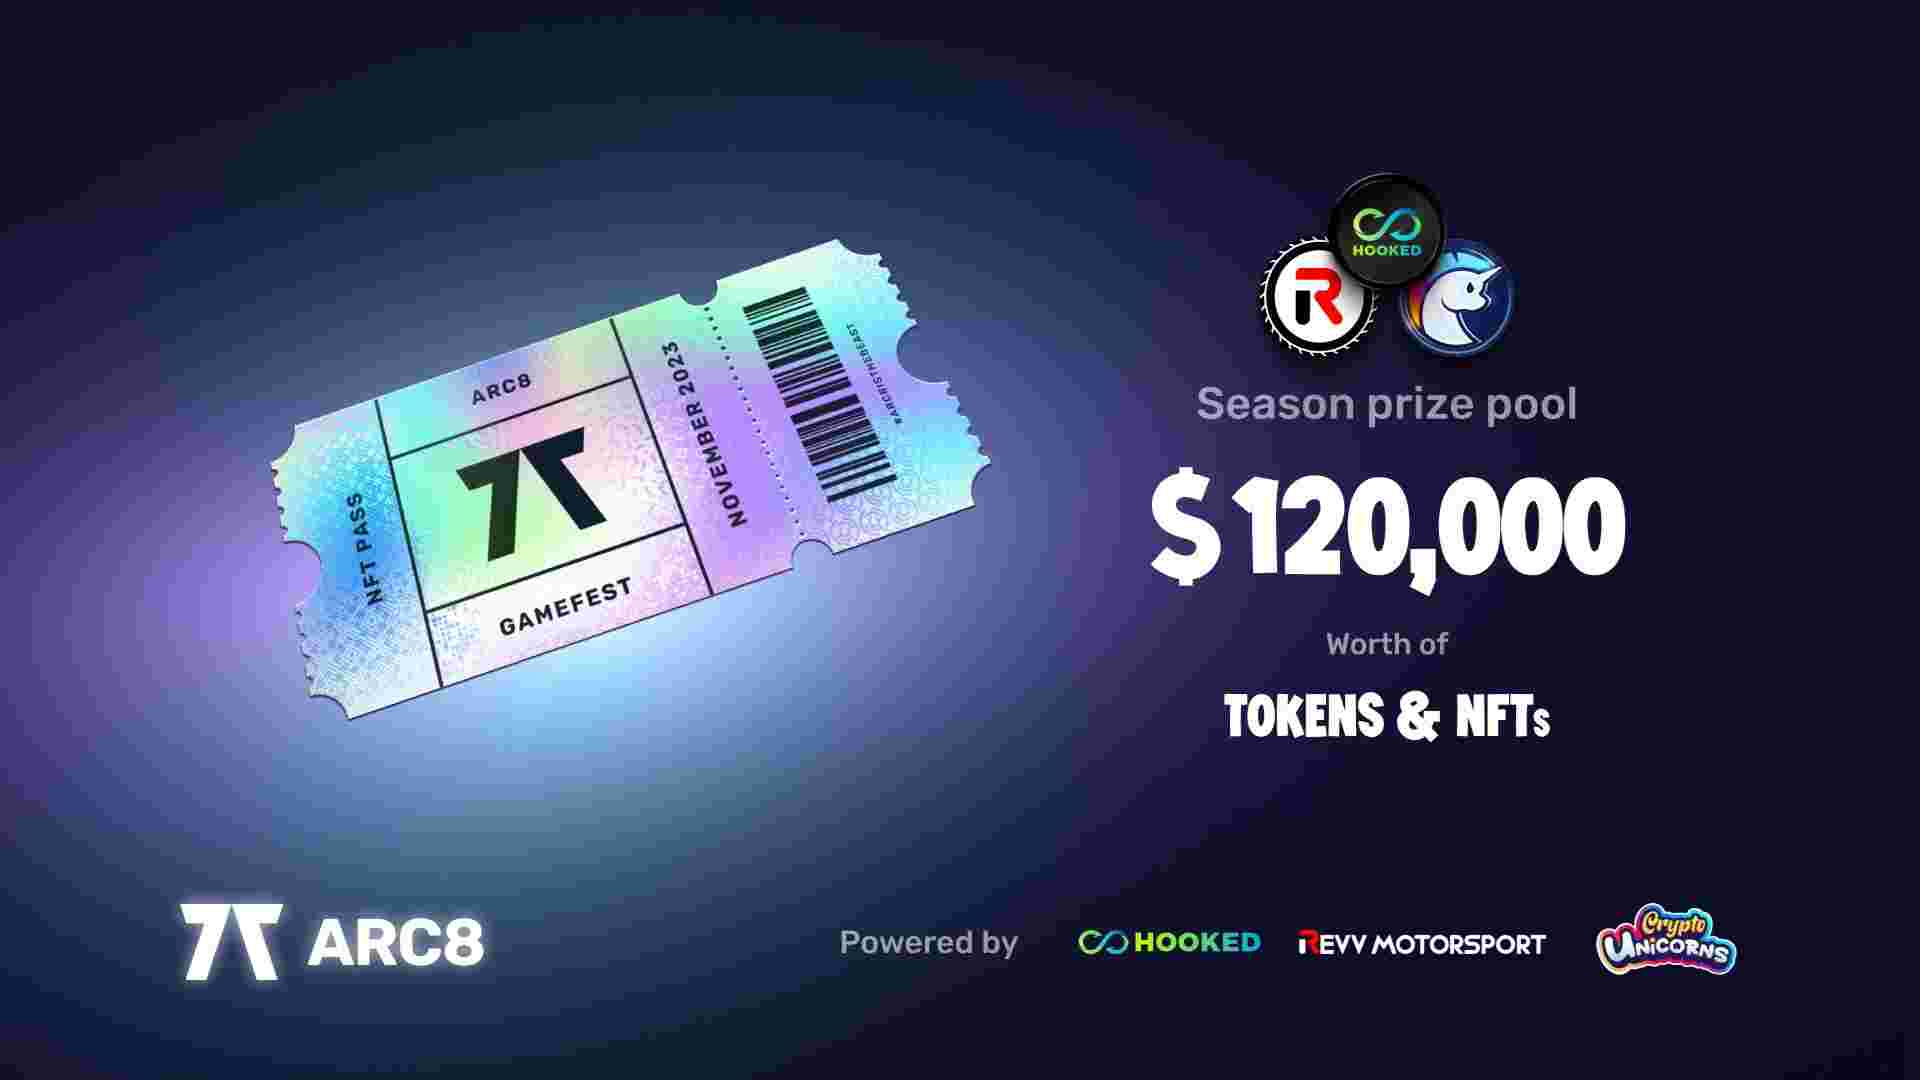 Arc8 desencadeia extravagância do GameFest com prêmio total de US$ 120.000 e NFTs exclusivos